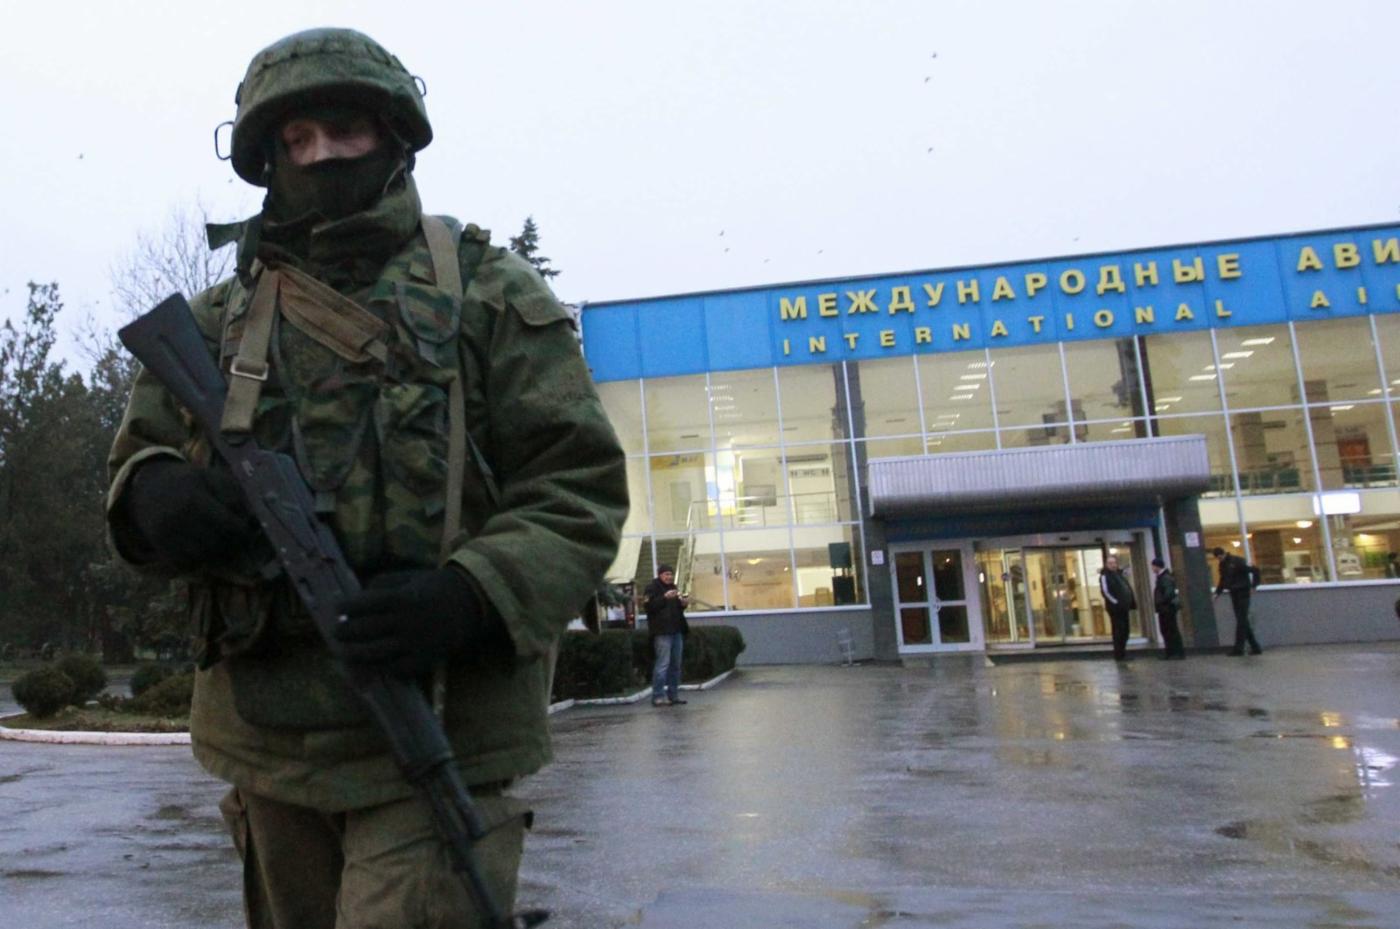  Anexión ilegítima de Crimea por parte de Rusia en 2014. Una patrulla rusa en el aeropuerto internacional de Simferópol en Crimea.
